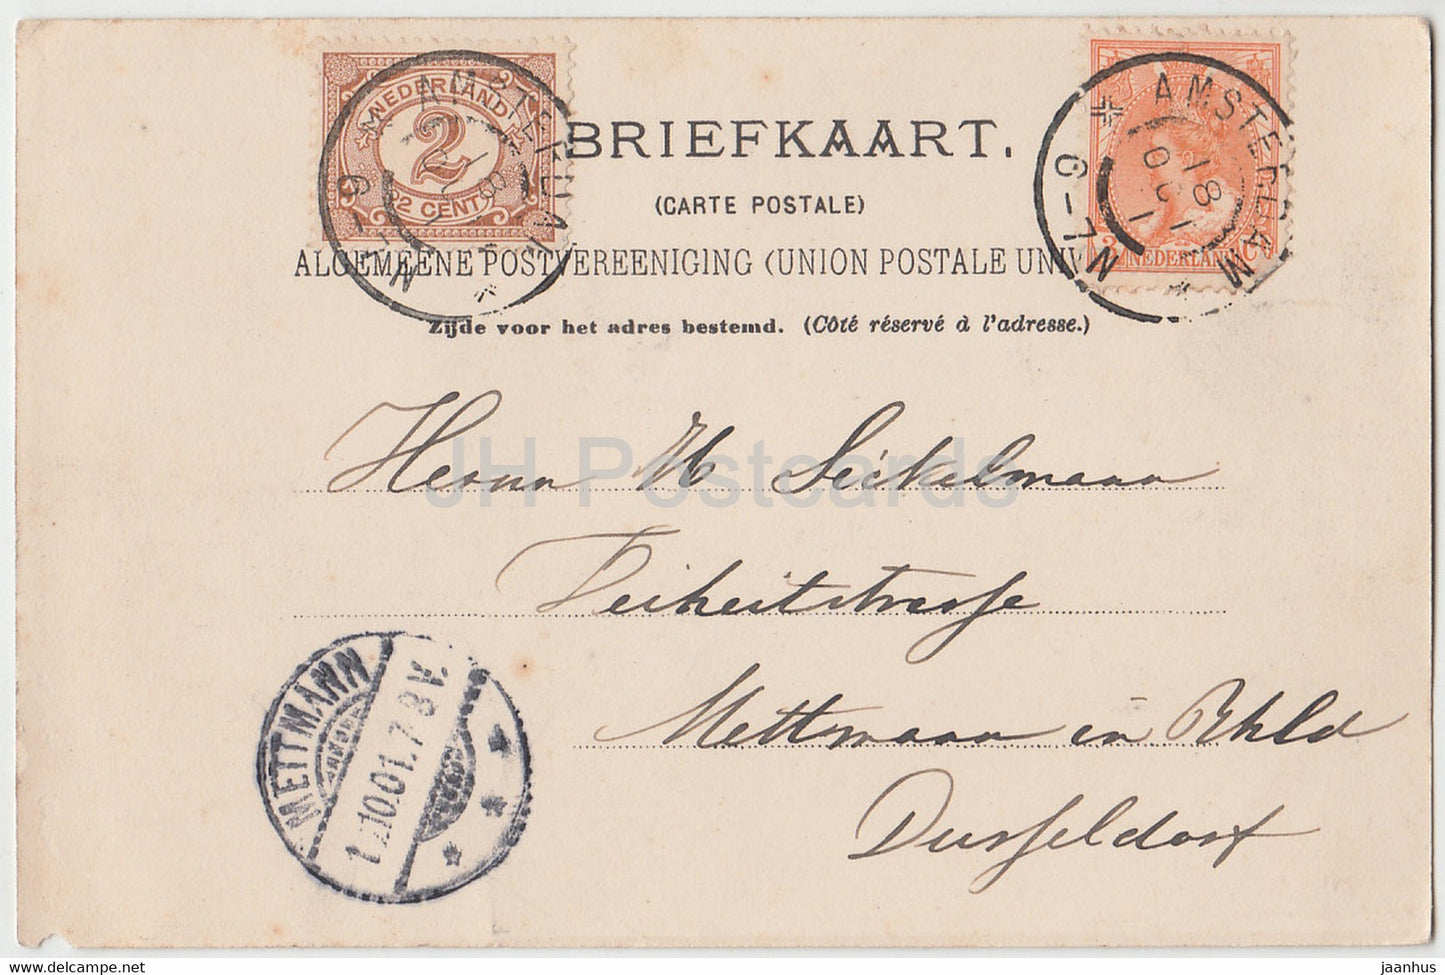 Amsterdam - Nieuwe Vaart - moulin à vent - carte postale ancienne - 1901 - Pays-Bas - utilisé